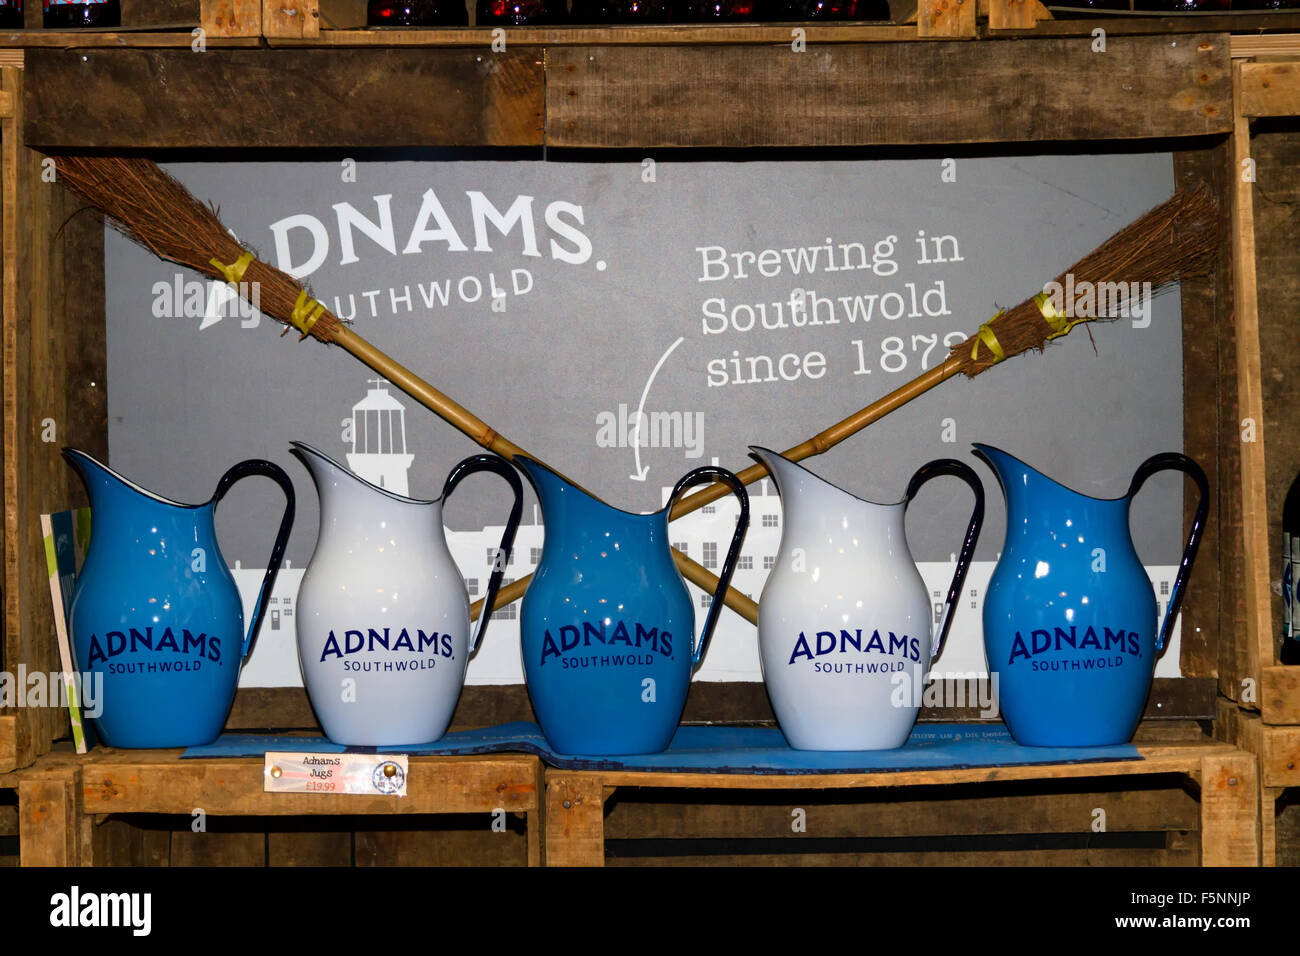 Adnams beer jugs on sale, Jimmy's Farm, Wherstead, Ipswich, Suffolk, UK Stock Photo